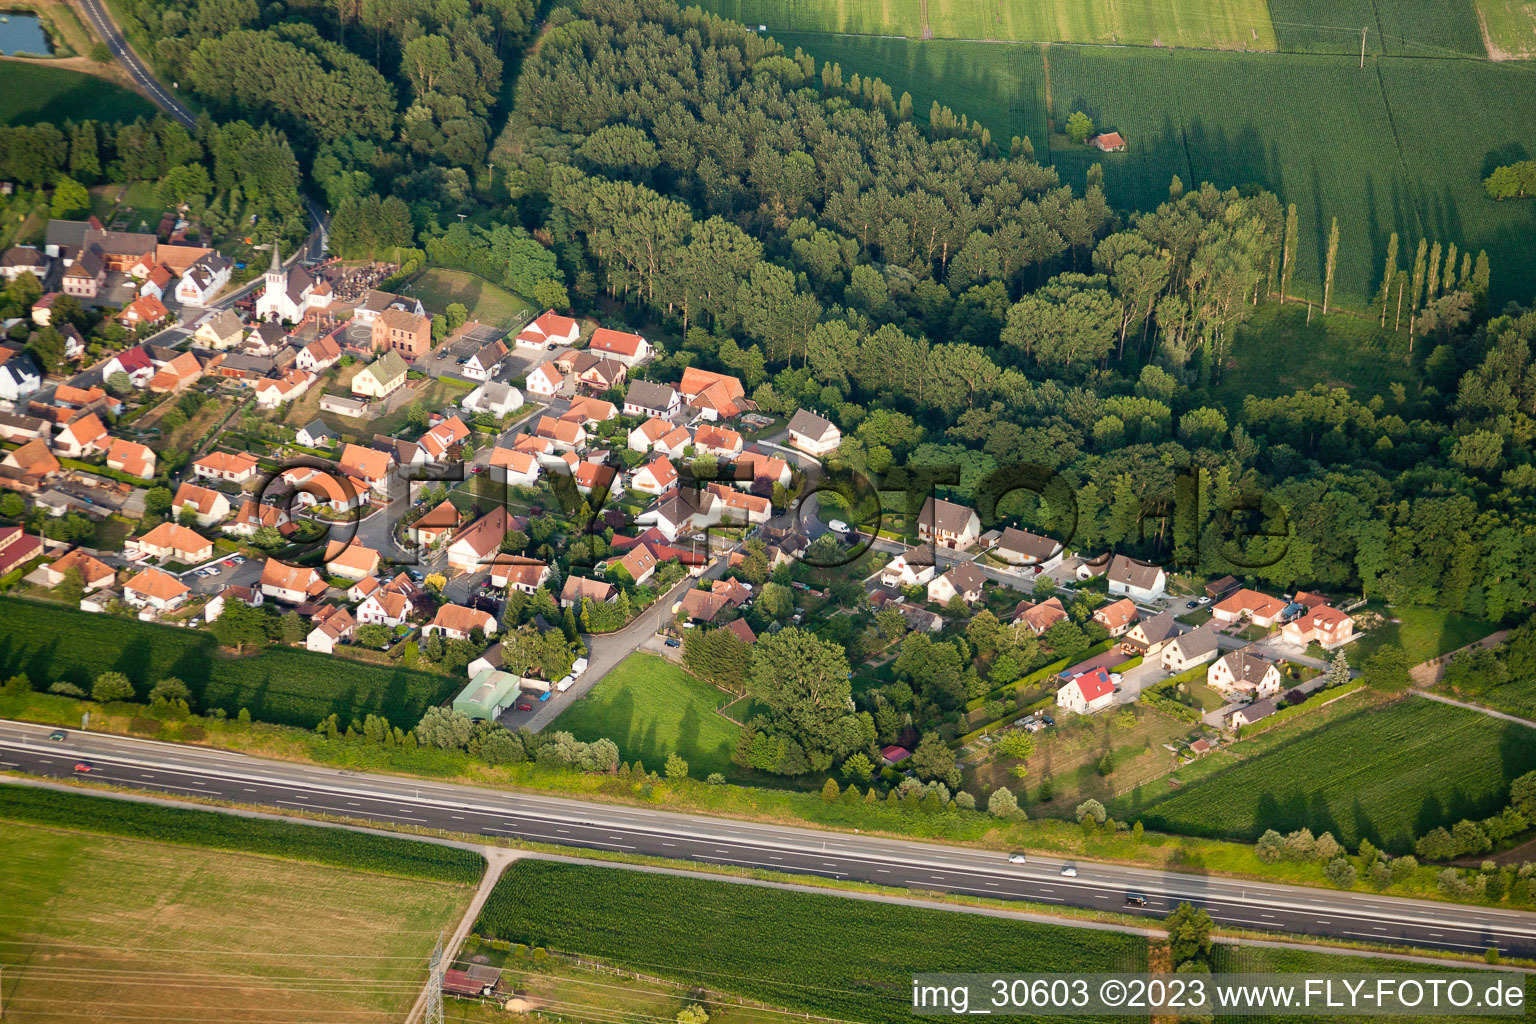 Vue aérienne de De l'ouest à Kesseldorf dans le département Bas Rhin, France